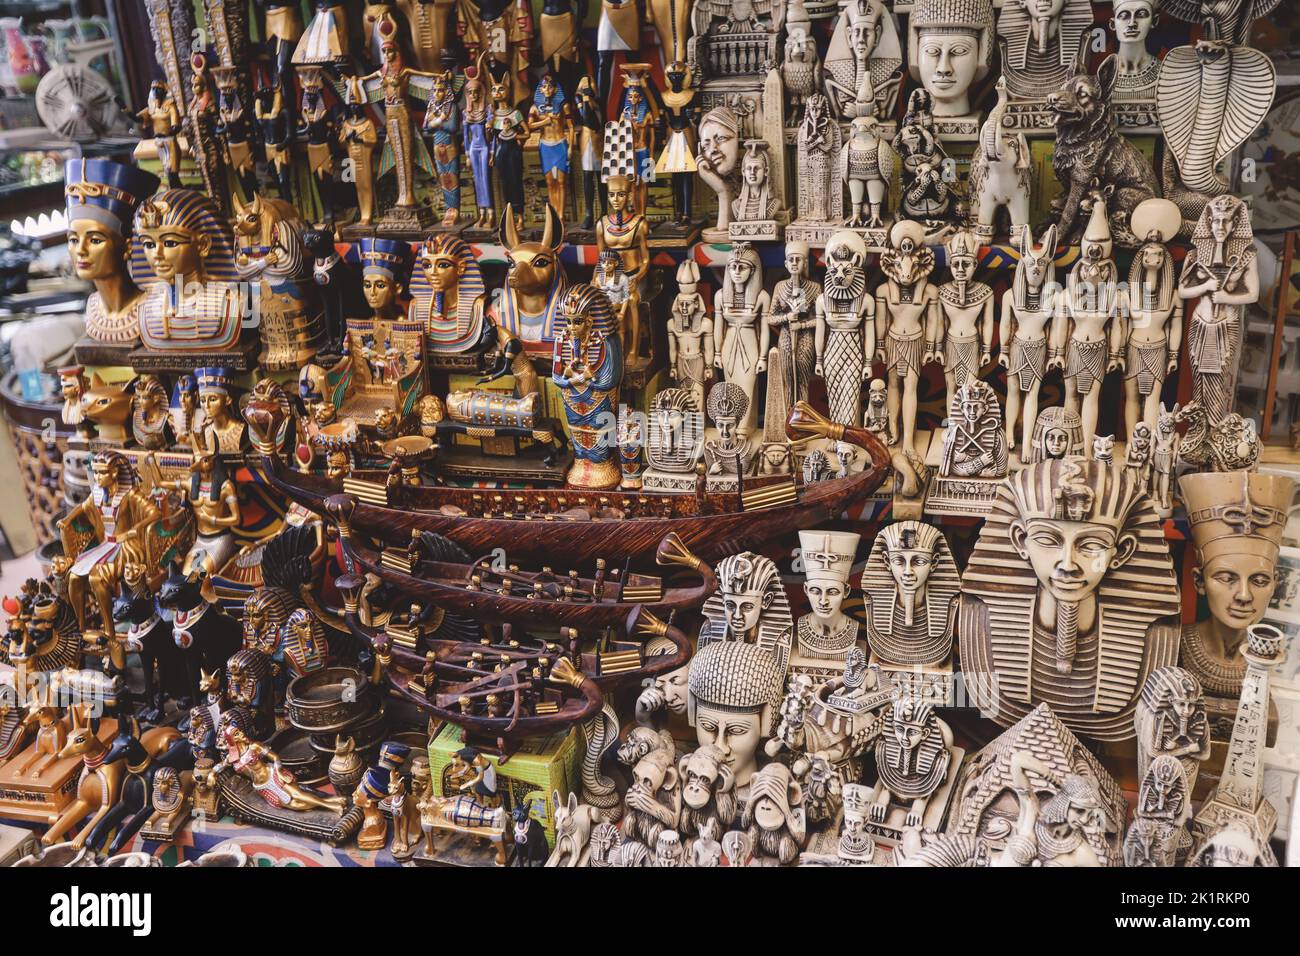 Cairo, Egitto - 15 novembre 2020: Souvenir turistici sul Khan el-Khalili, famoso bazar e souq (o souk) nel centro storico del Cairo, Egitto Foto Stock